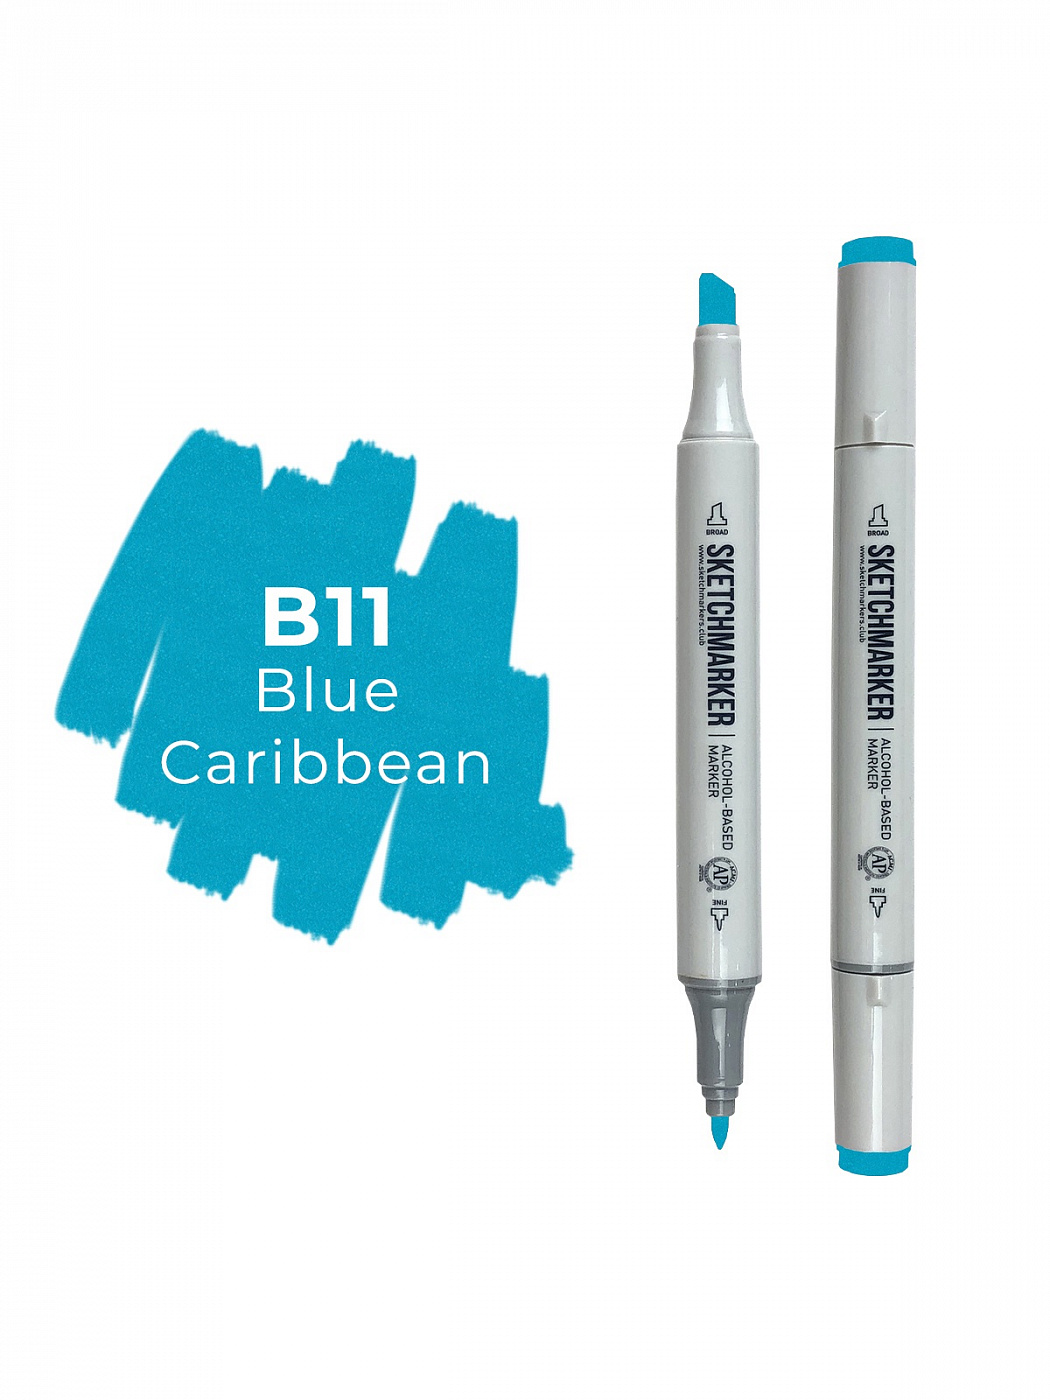 Маркер двухсторонний на спиртовой основе Sketchmarker Цвет Карибский синий маркер спиртовой promarker цв c429 синий холодный